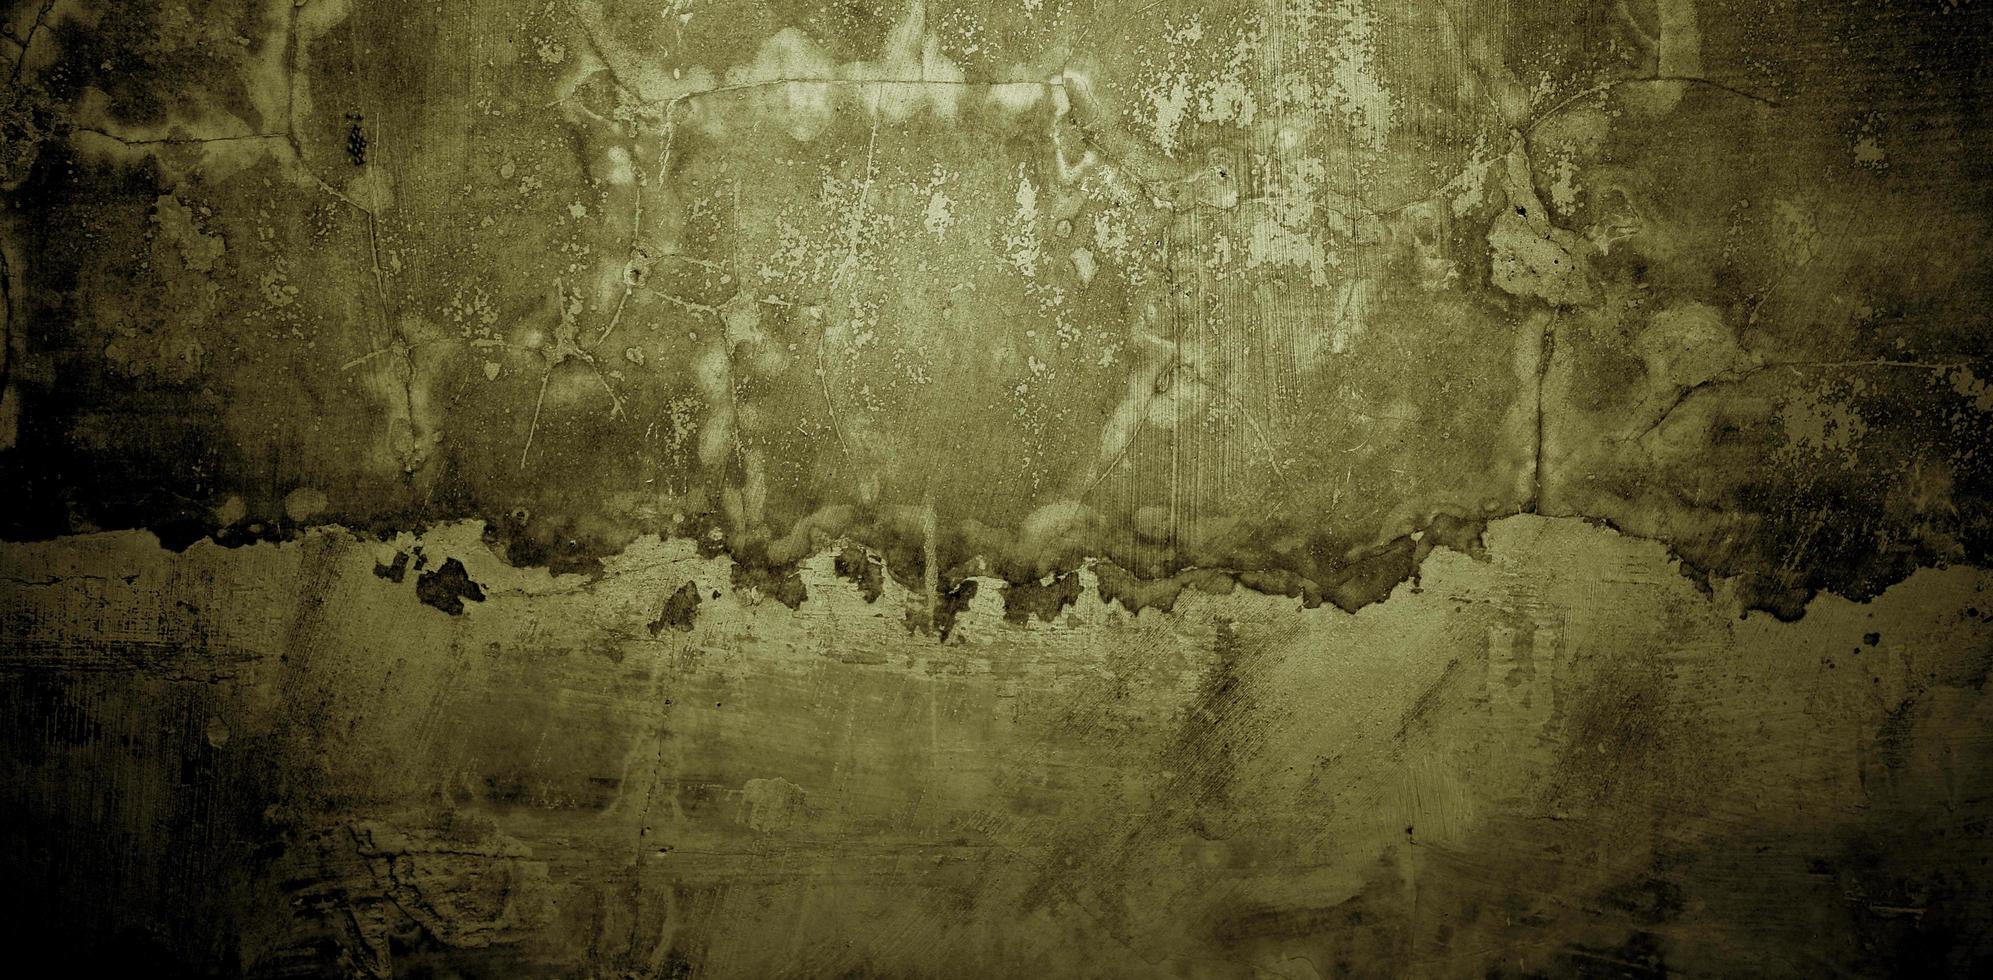 Textura de paredes de hormigón viejo. paredes agrietadas de estuco para el fondo foto